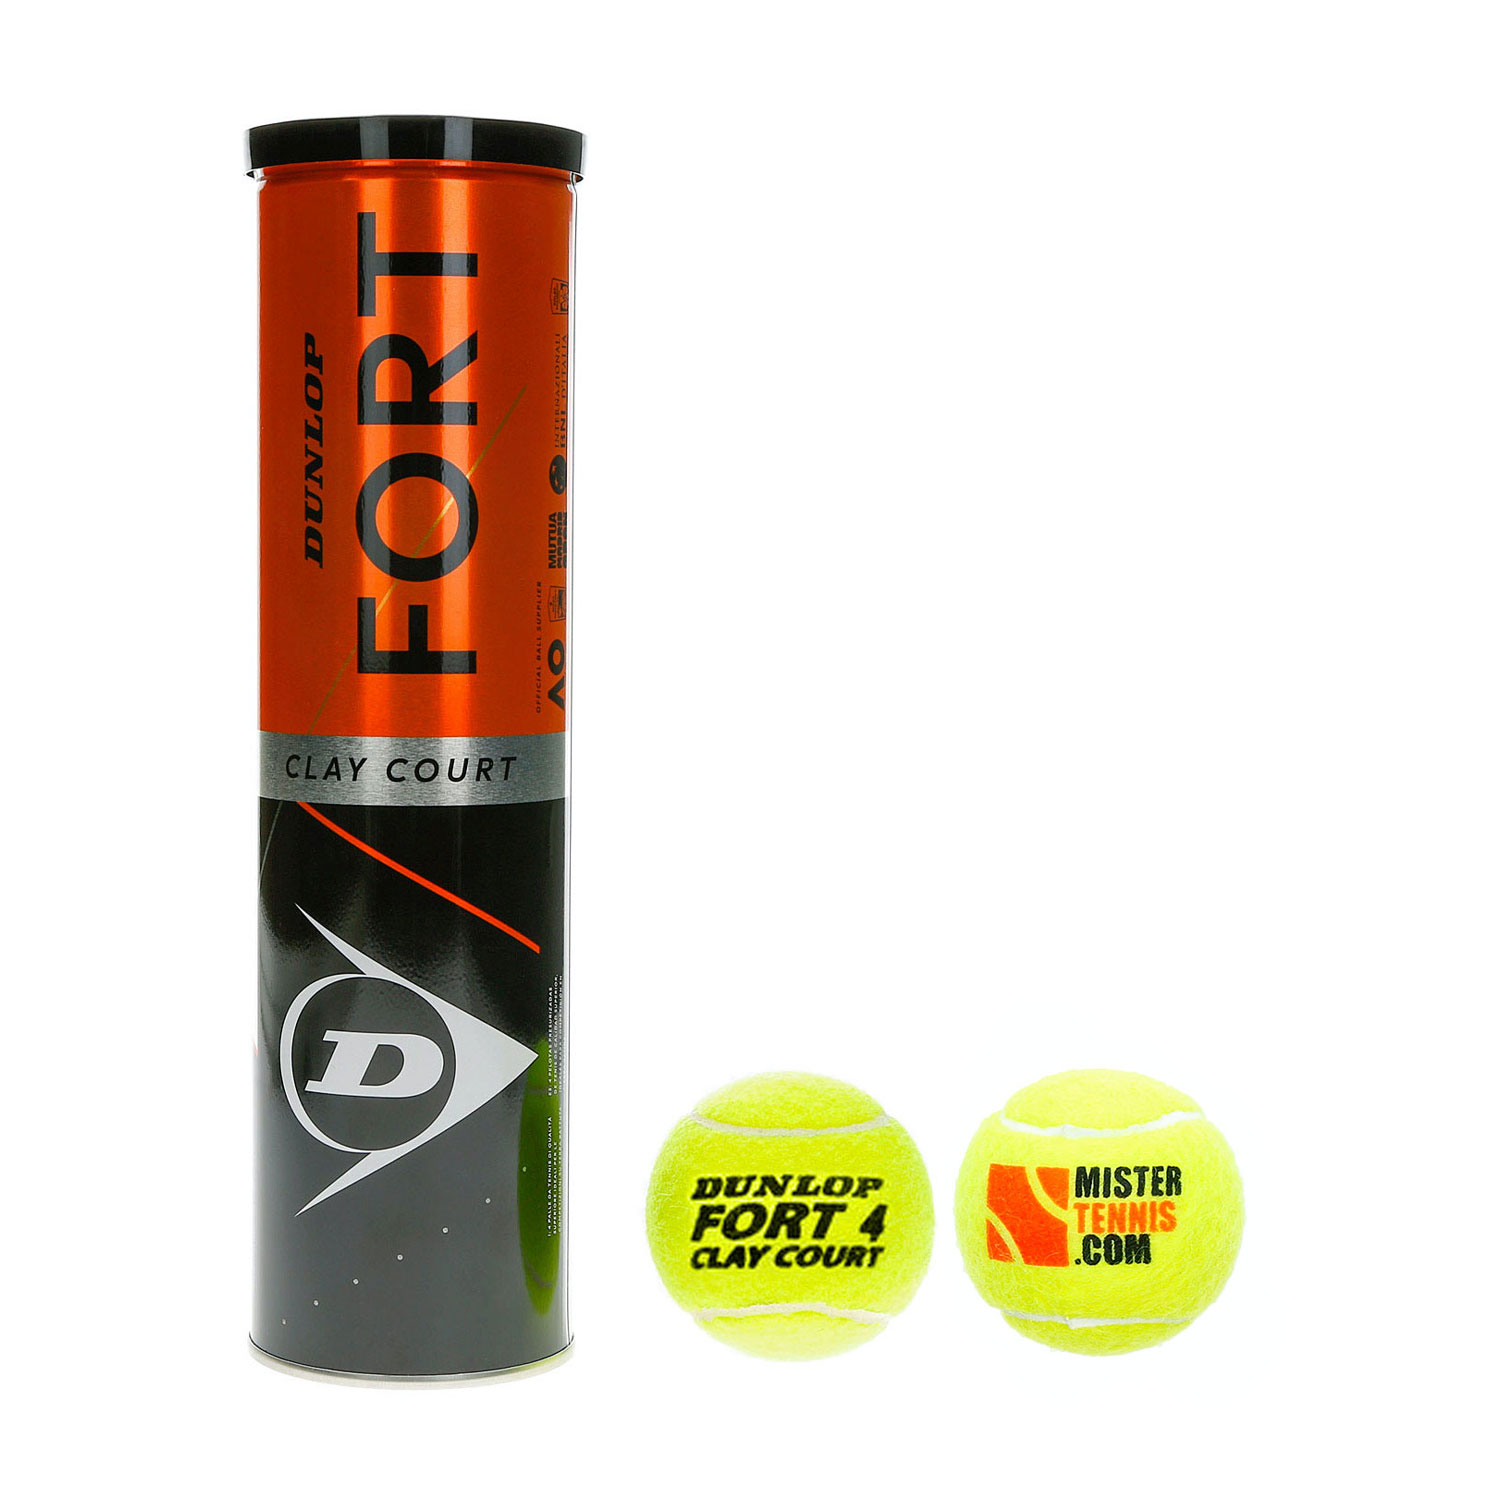 Dunlop Fort Clay Court Mister Tennis Logo - 4 Ball Can